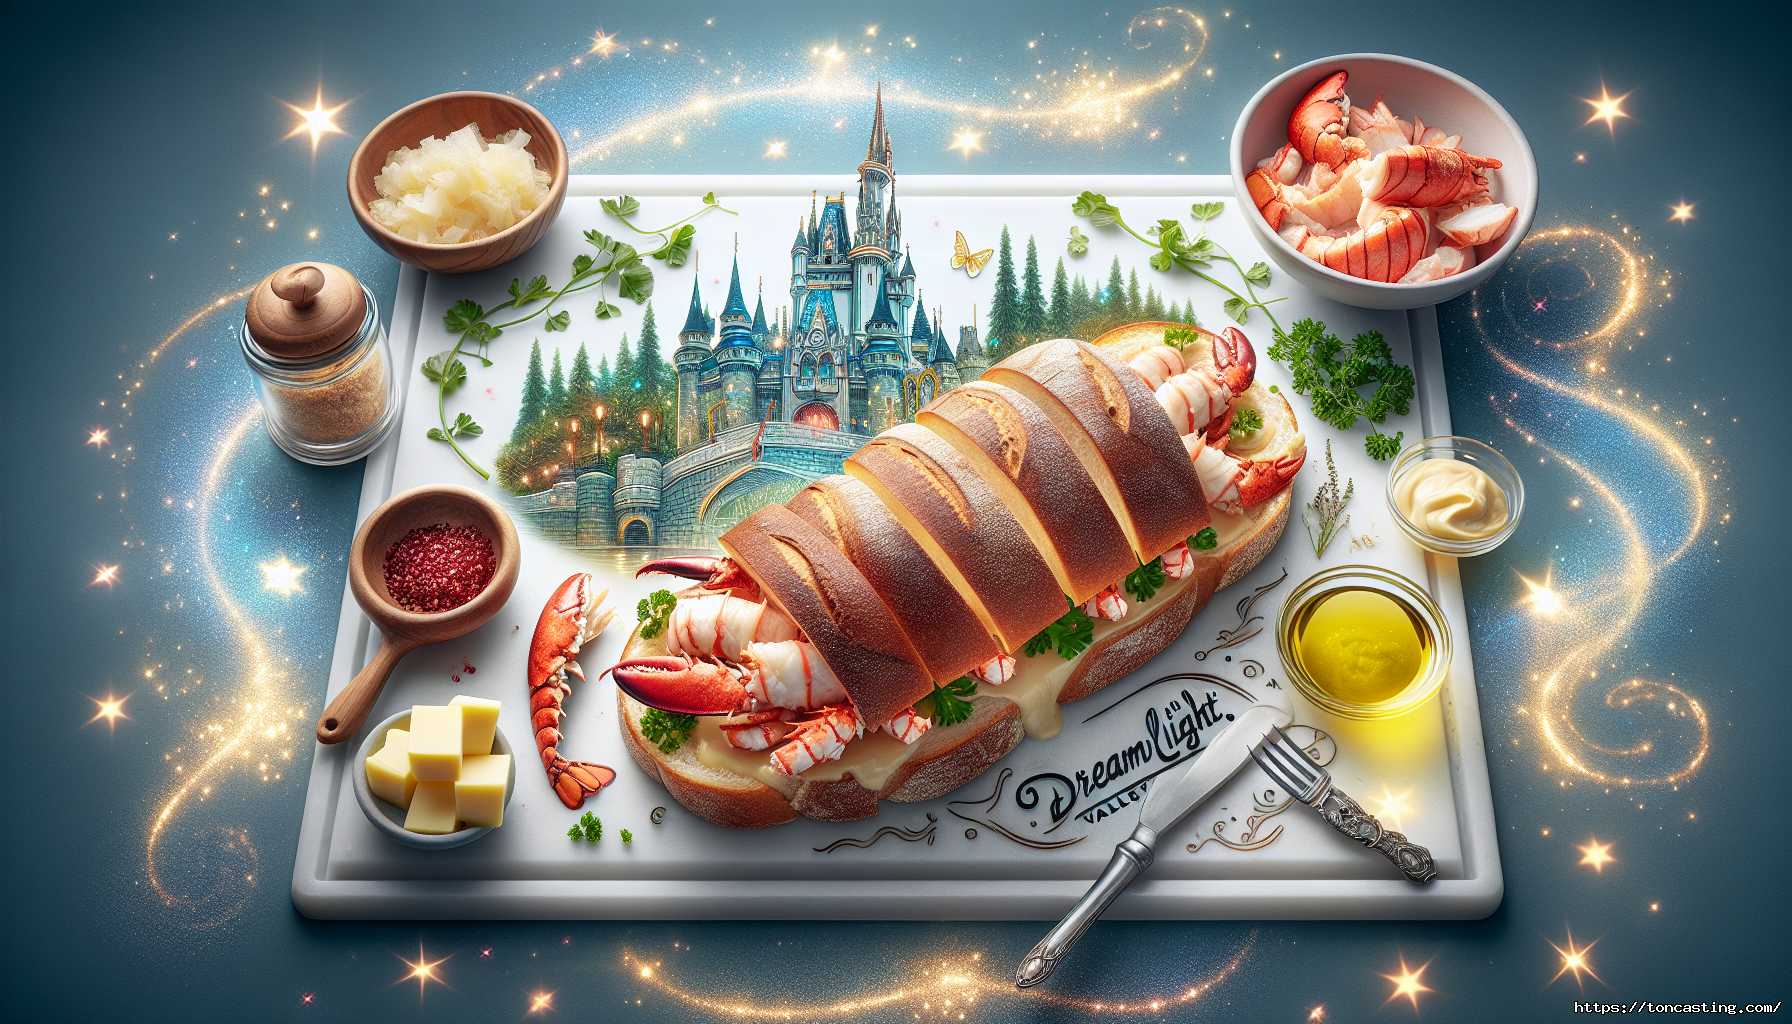 Recette Sandwich au Homard Disney Dreamlight Valley : Guide Complet des Ingrédients et Astuces